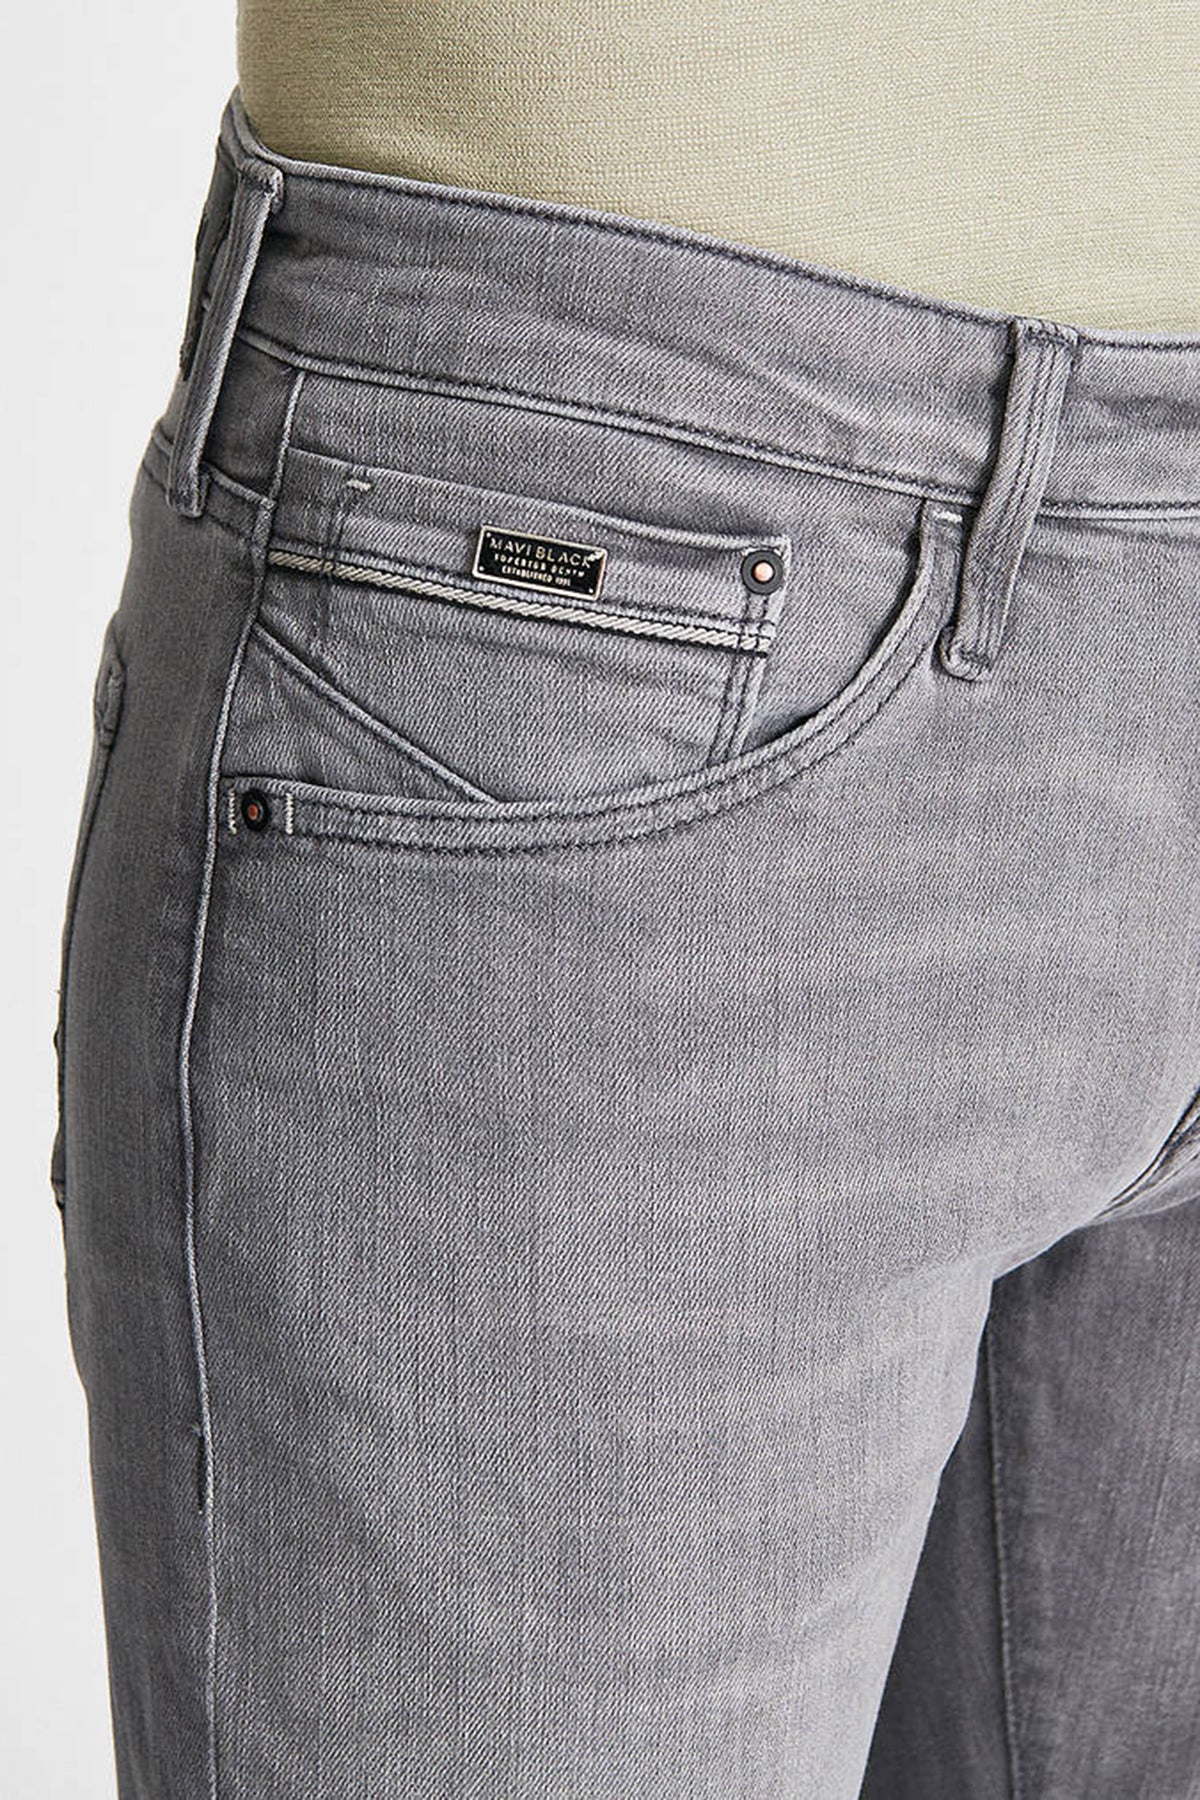 Mavi Marcus Pamuklu Slim Fit Normal Bel Jeans Erkek Kot Pantolon 0035132195 GRİ